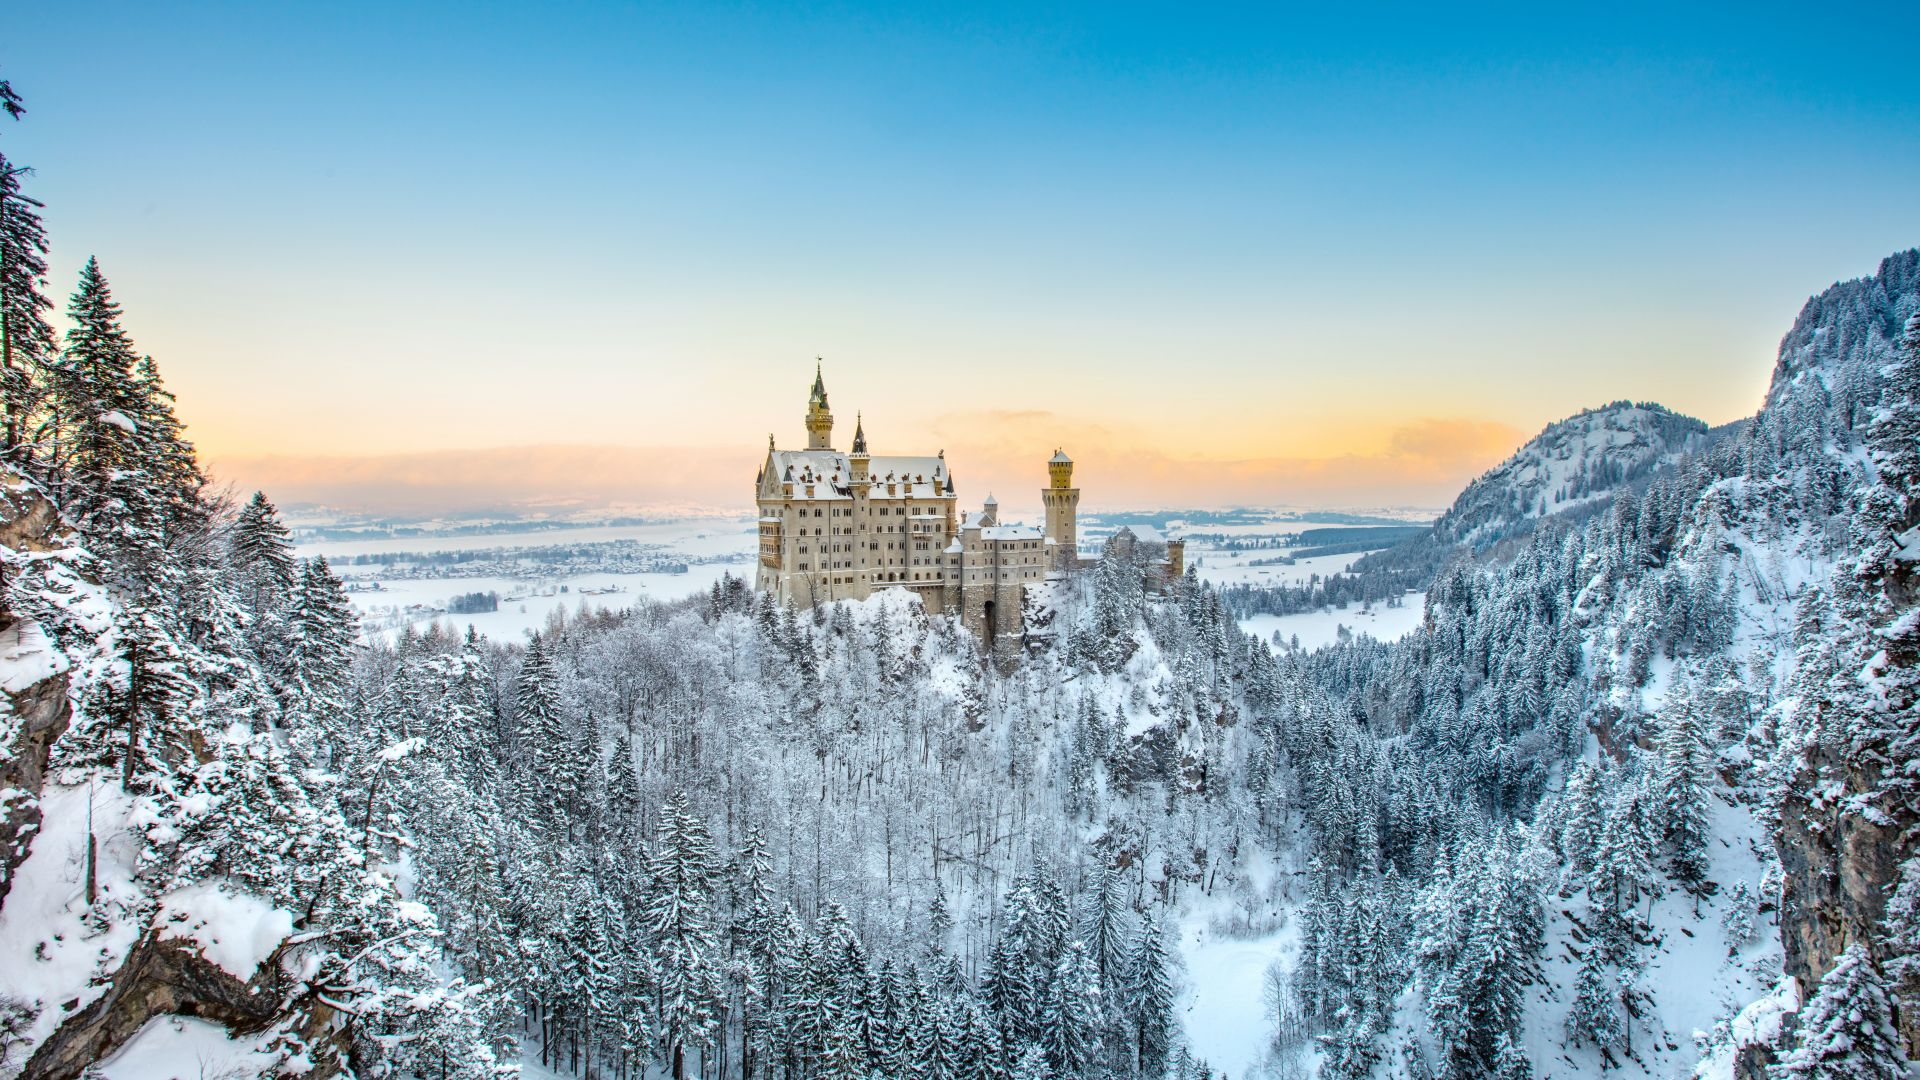 Schwangau: Château de Neuschwanstein au coucher du soleil dans le paysage d'hiver